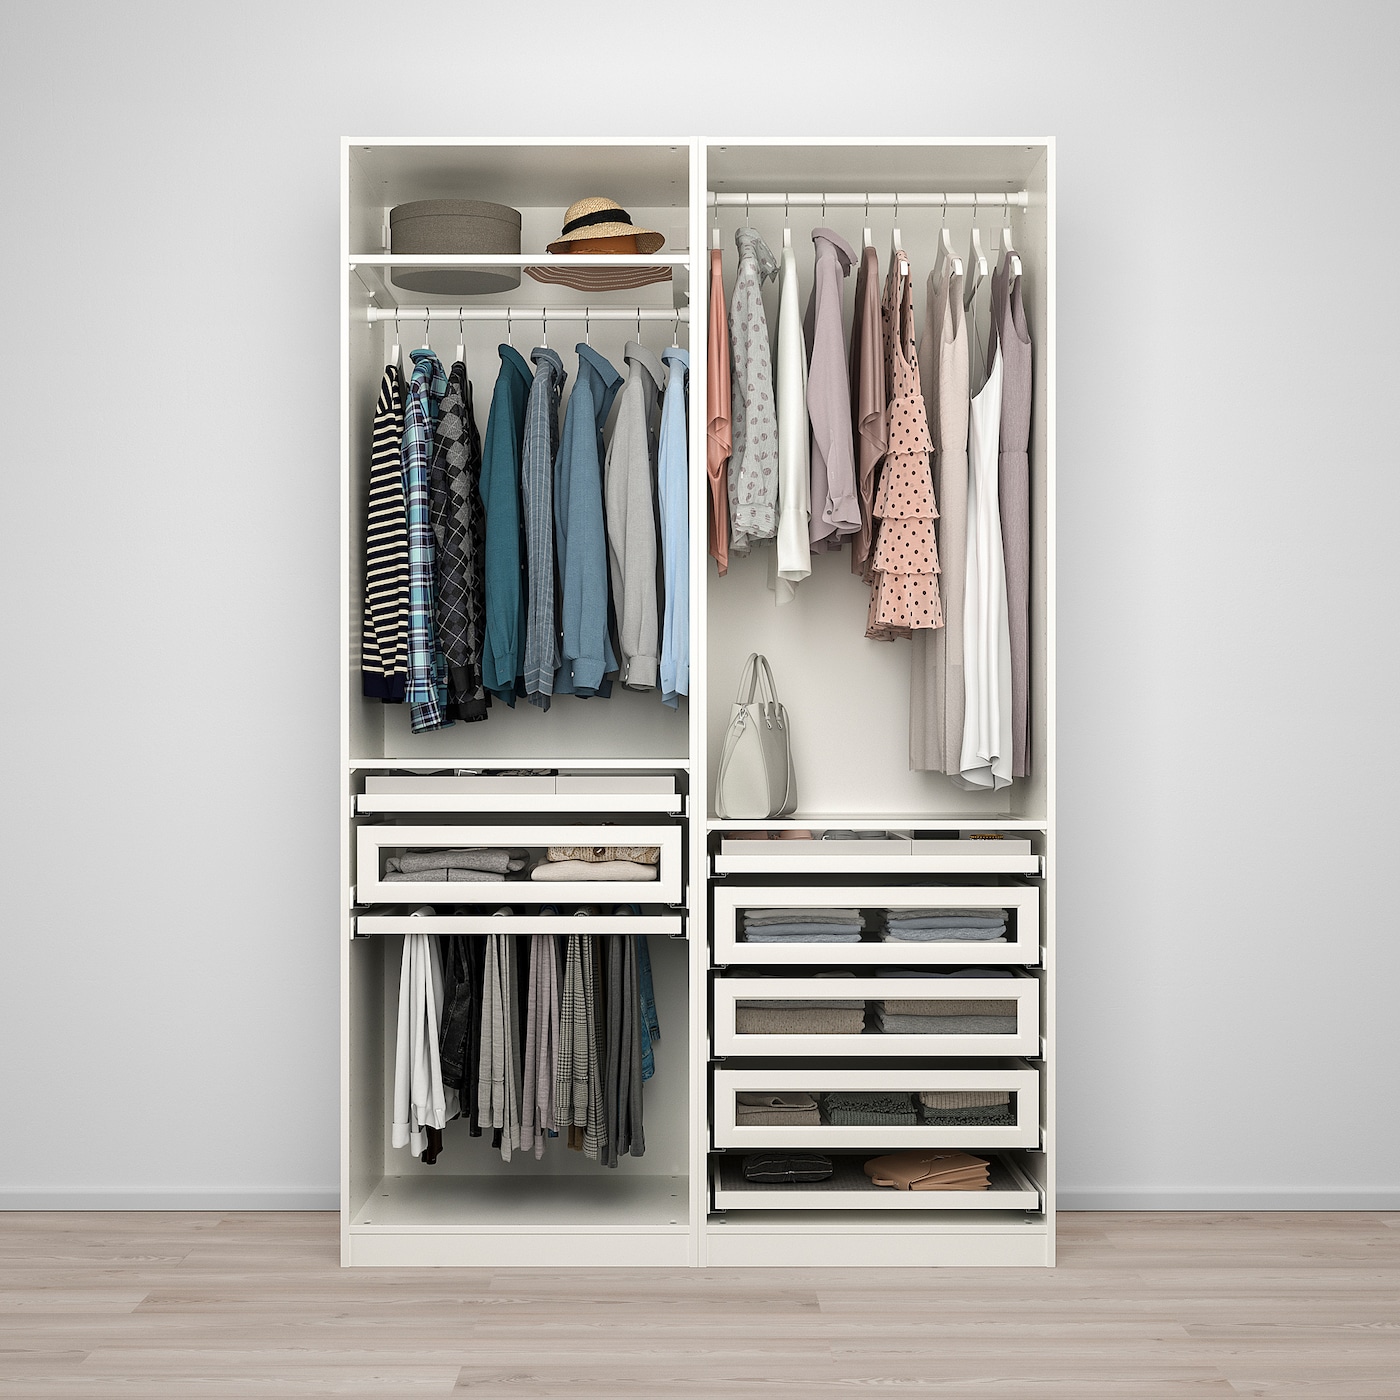 Гардеробы в икеа фото и цены: Гардеробные системы IKEA - купить модульные шкафы для гардеробной